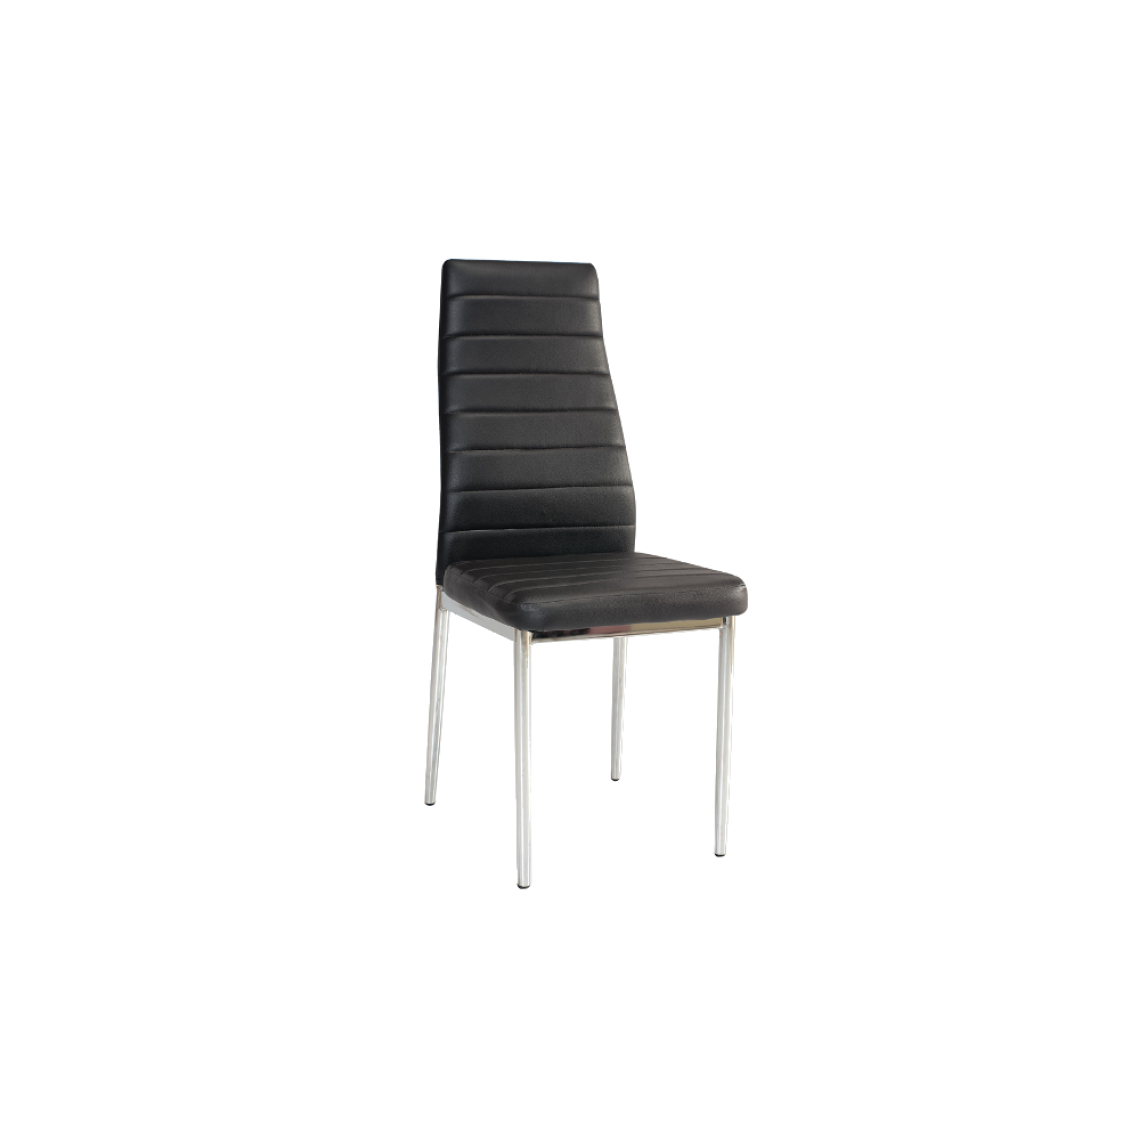 Ac-Deco - Chaise moderne - H261 - 40 x 38 x 96 cm - Cadre chromé - Noir - Chaises